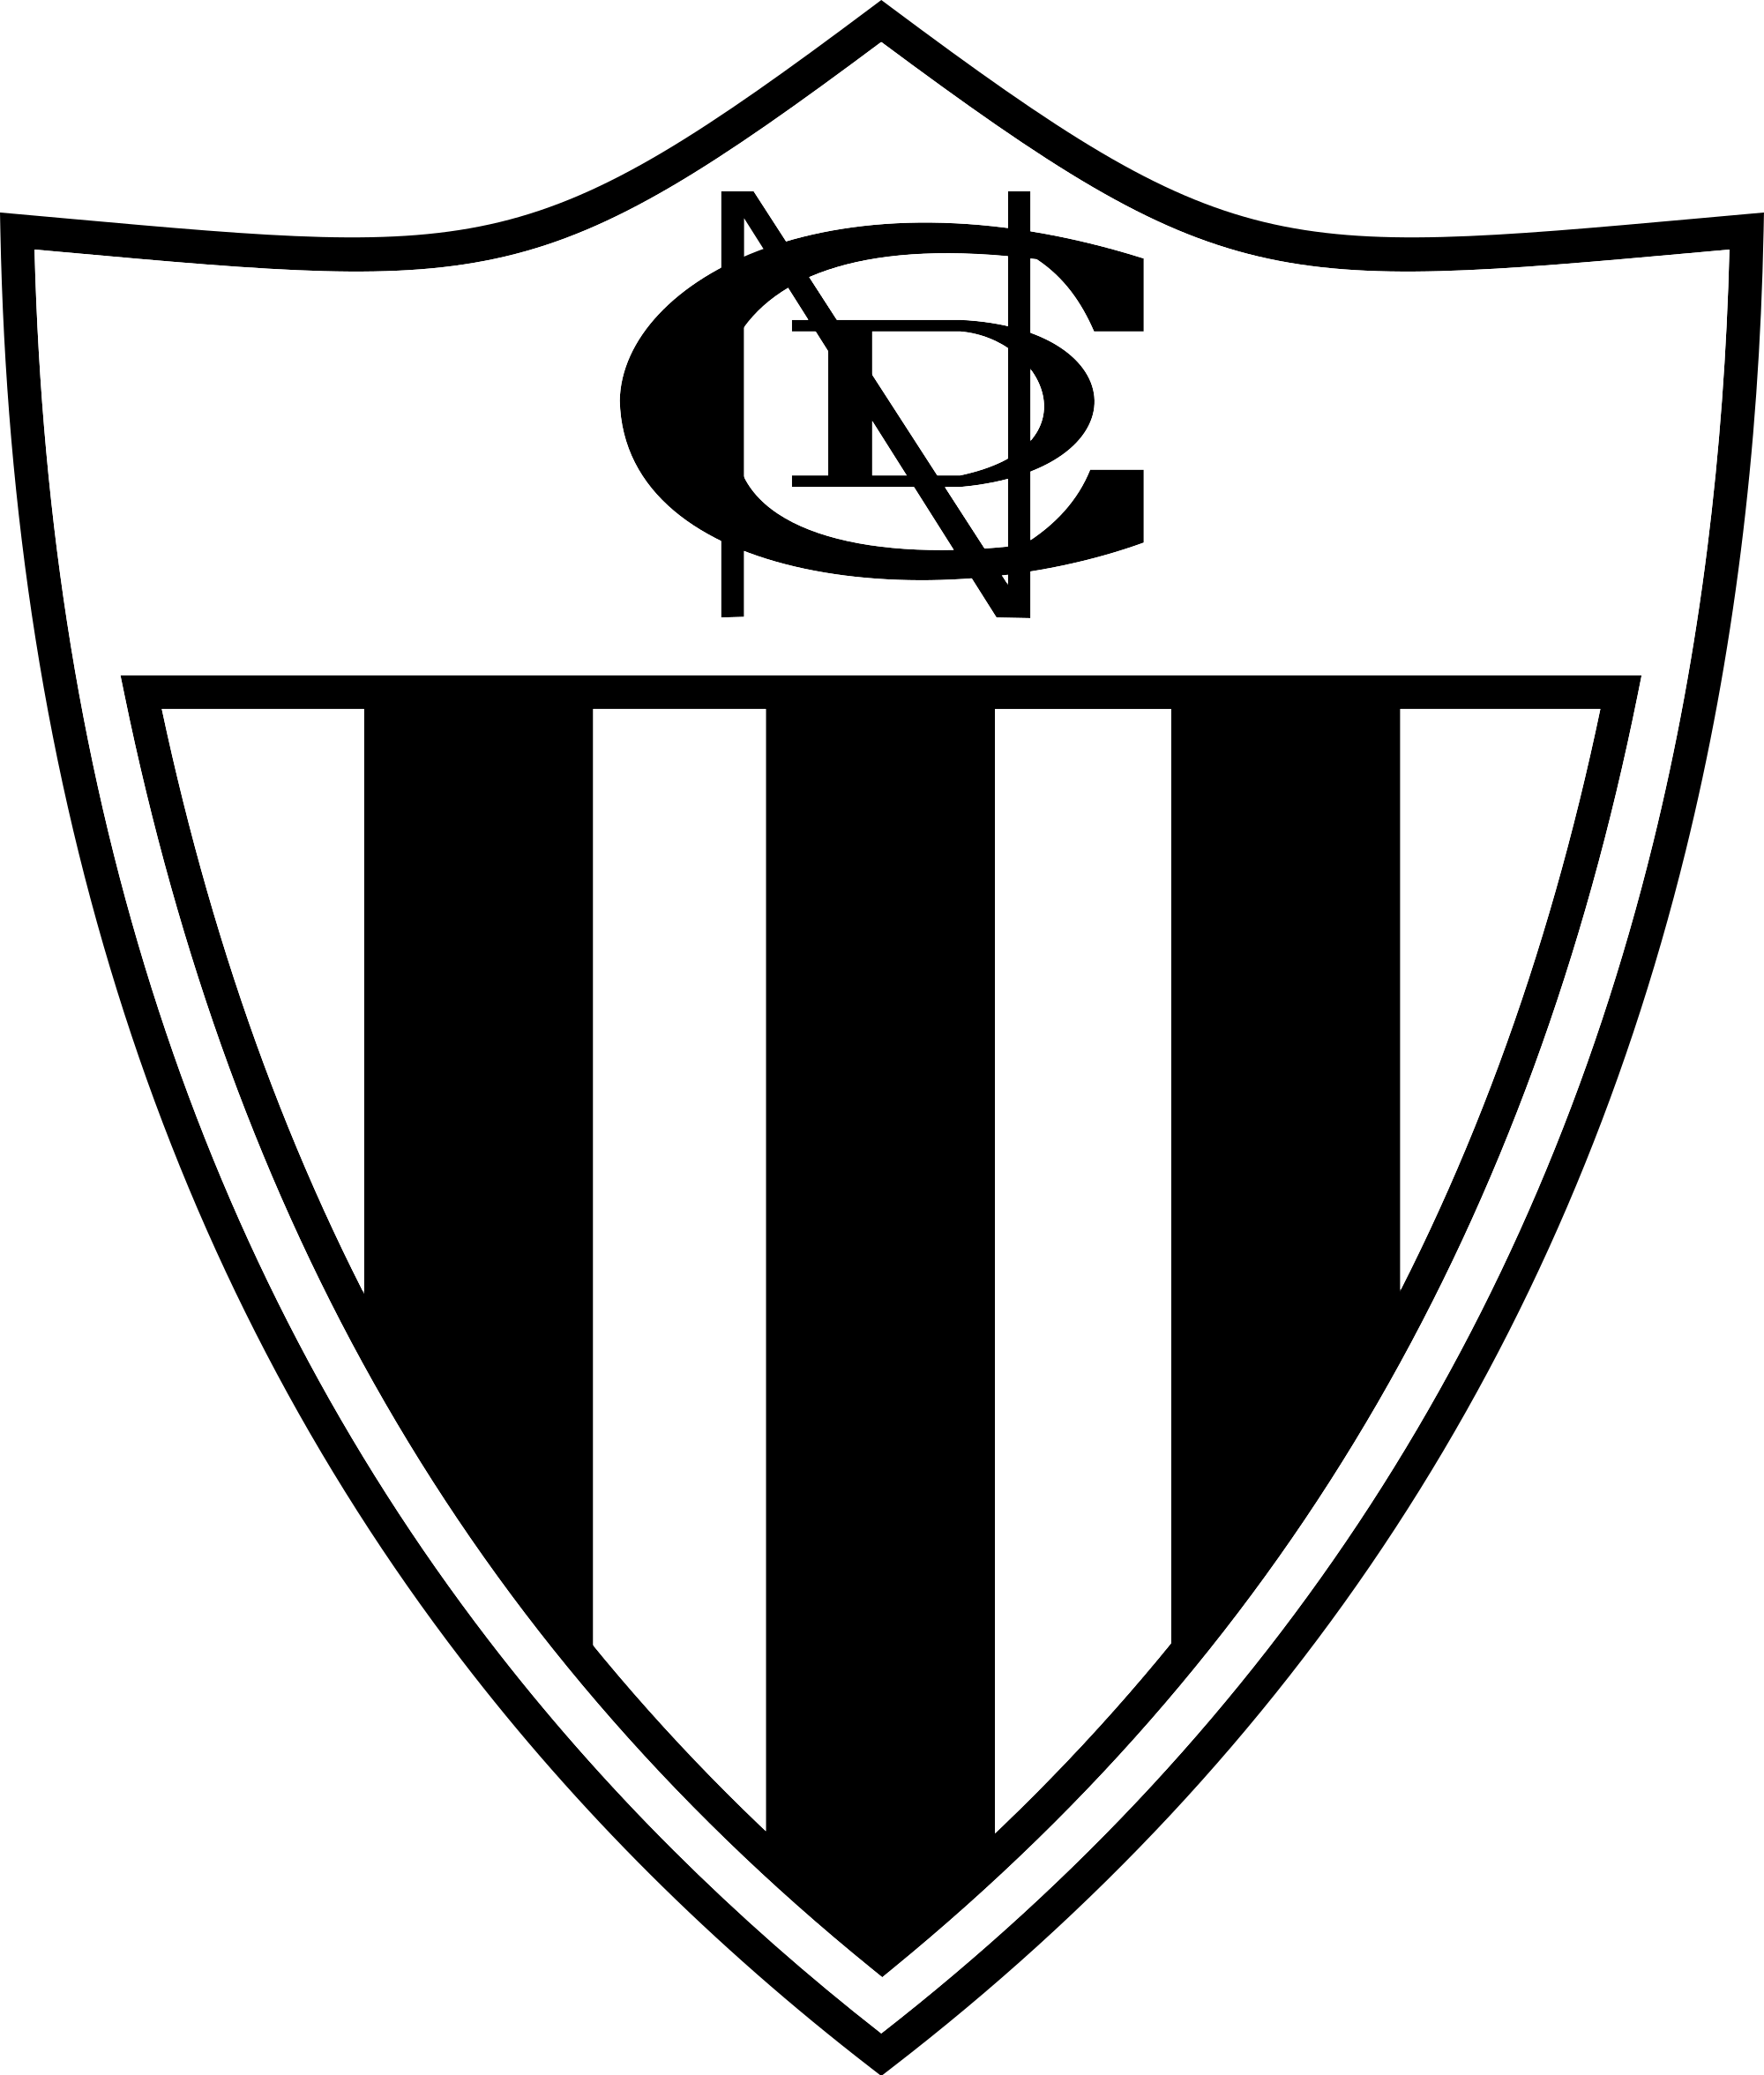 Club Nacional - Wikipedia